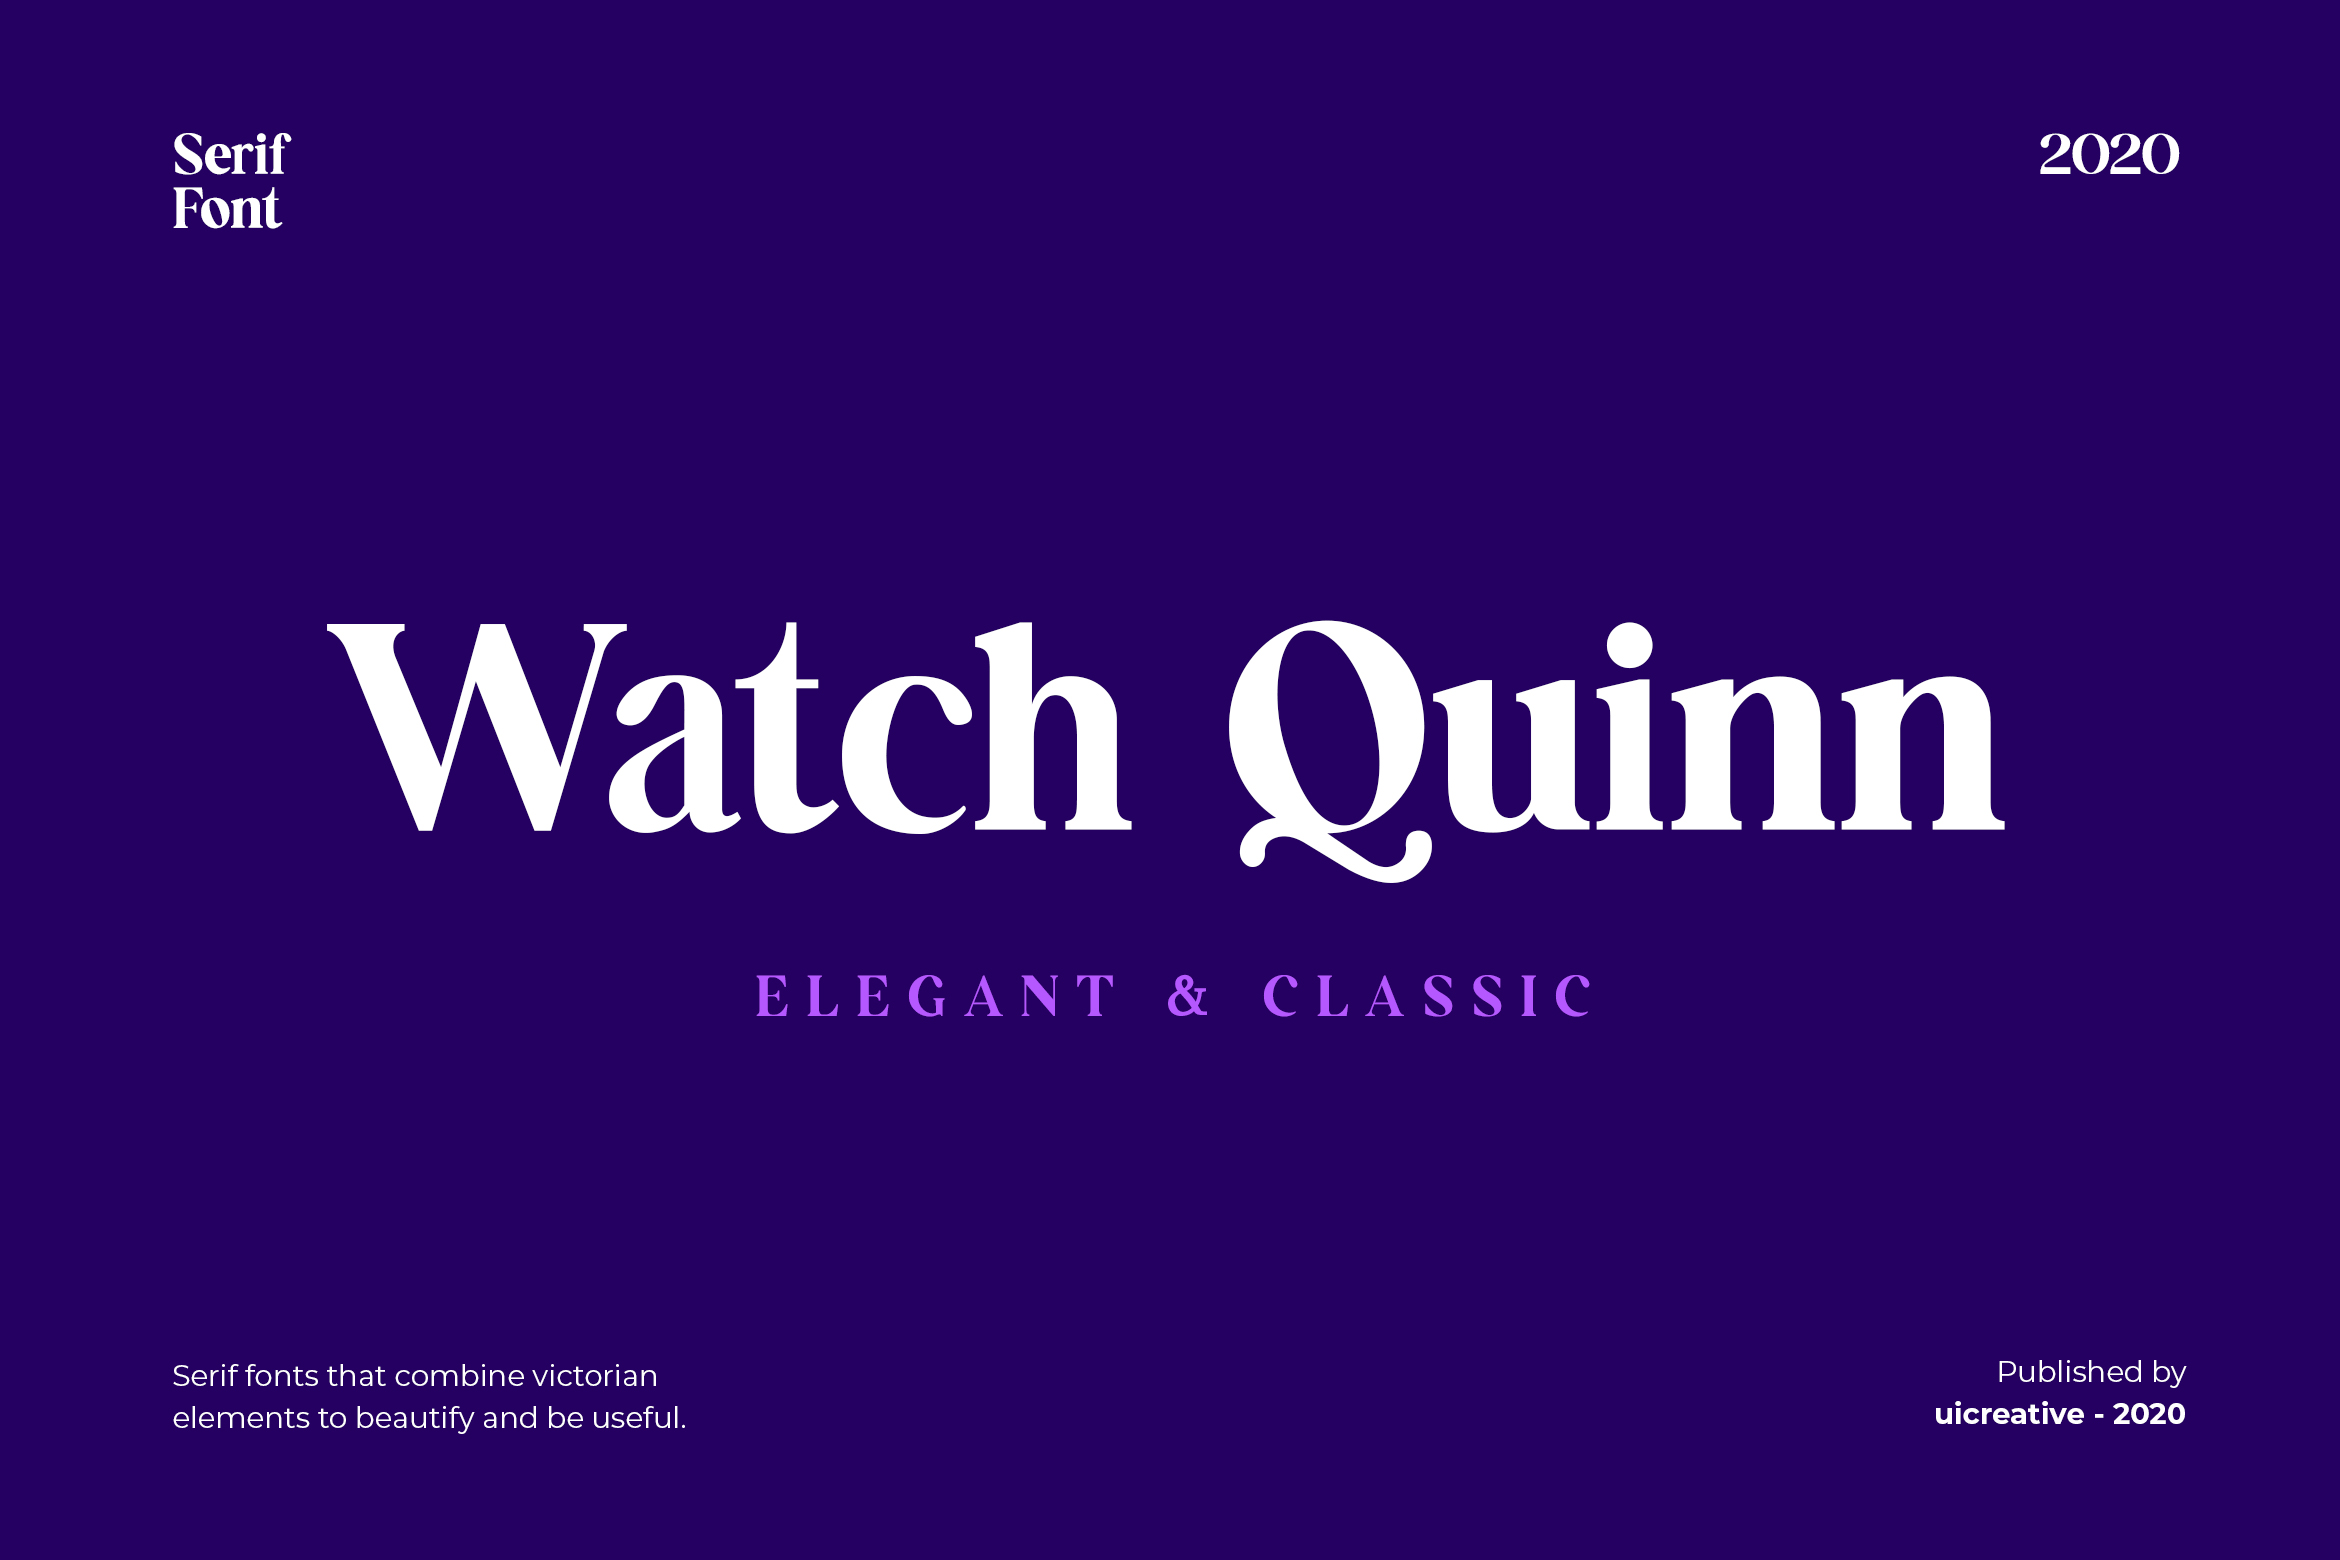 Watch Quinn